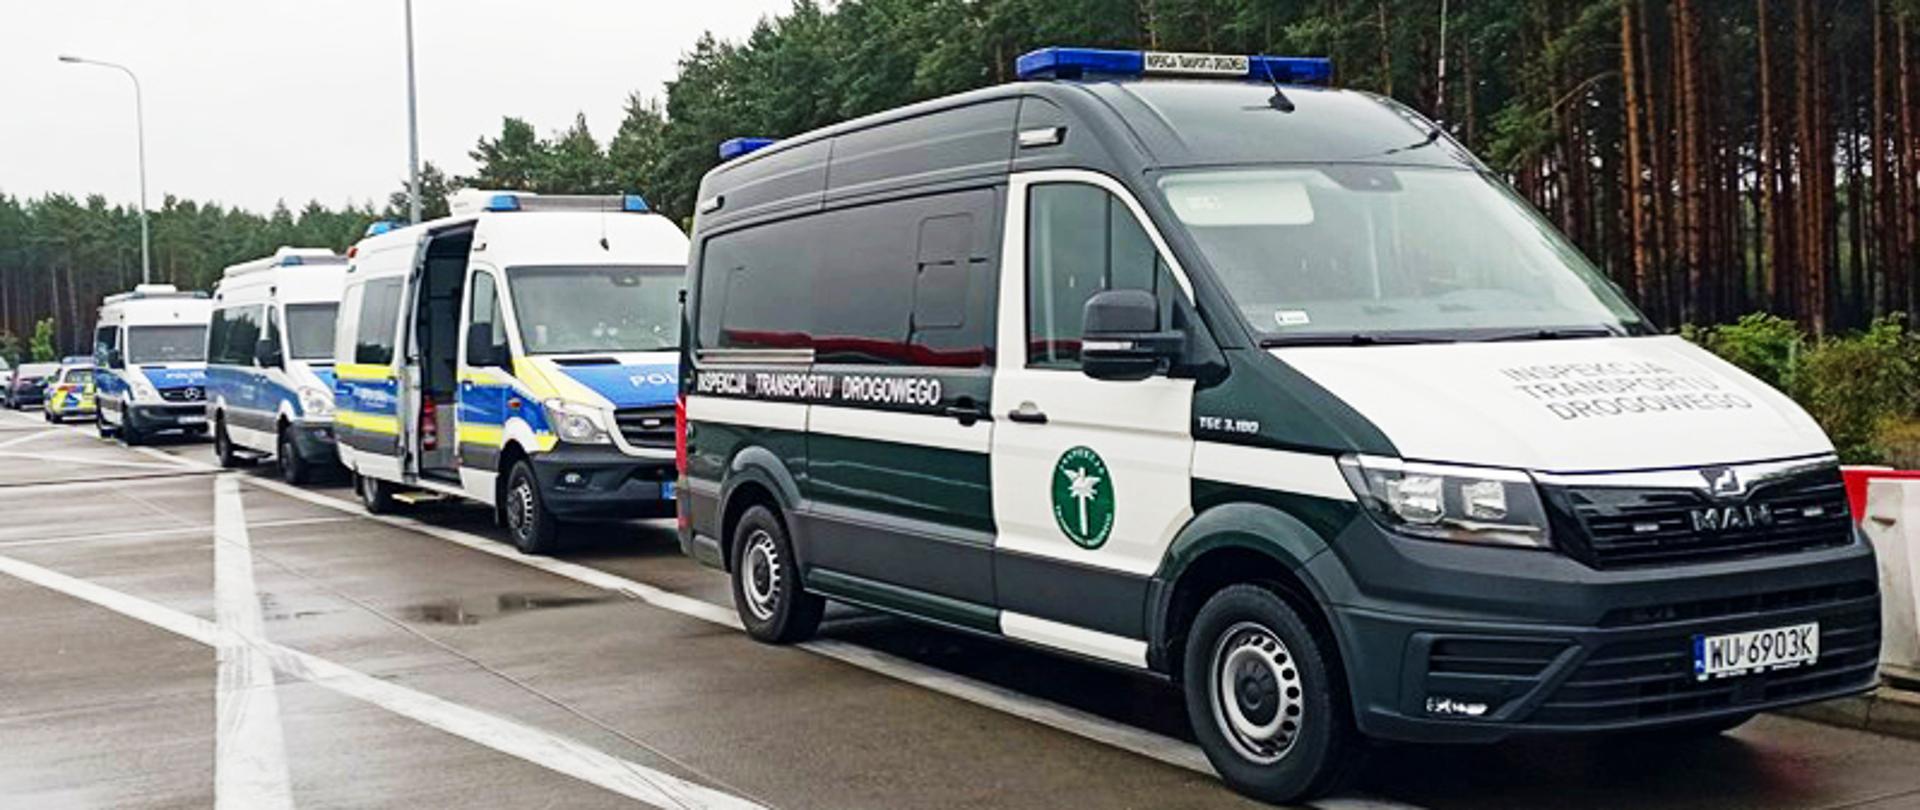 Działania kontrolne polskich i niemieckich służb prowadzone na lubuskim odcinku autostrady A2. Na zdjęciu furgon Inspekcji Transportu Drogowego i radiowozy niemieckiej Policji.
